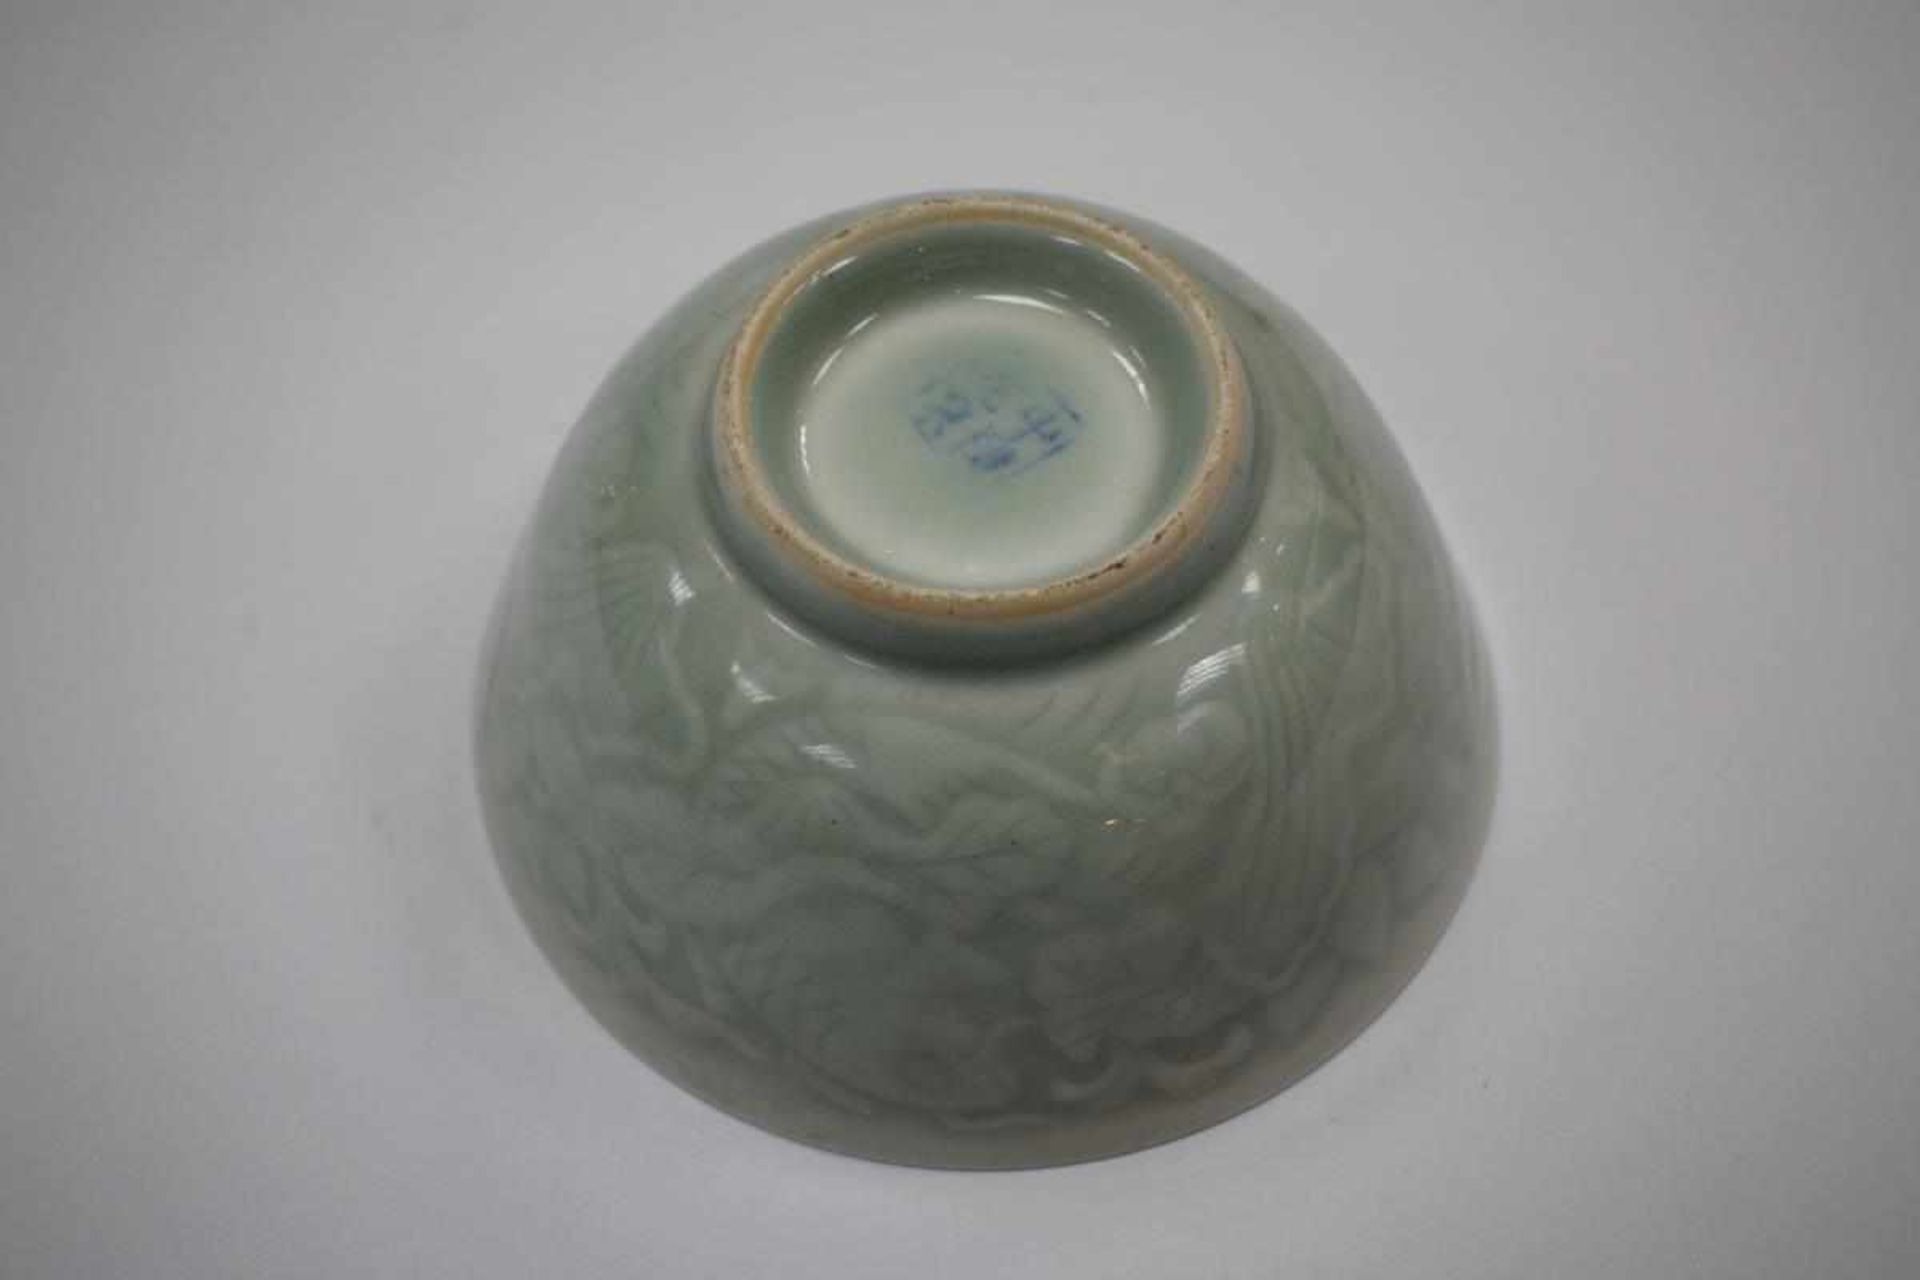 Chinesische Keramikschale mit SeladonglasurSchale Keramik China, jadegrüne Seladonglasur mit Fischen - Bild 2 aus 3